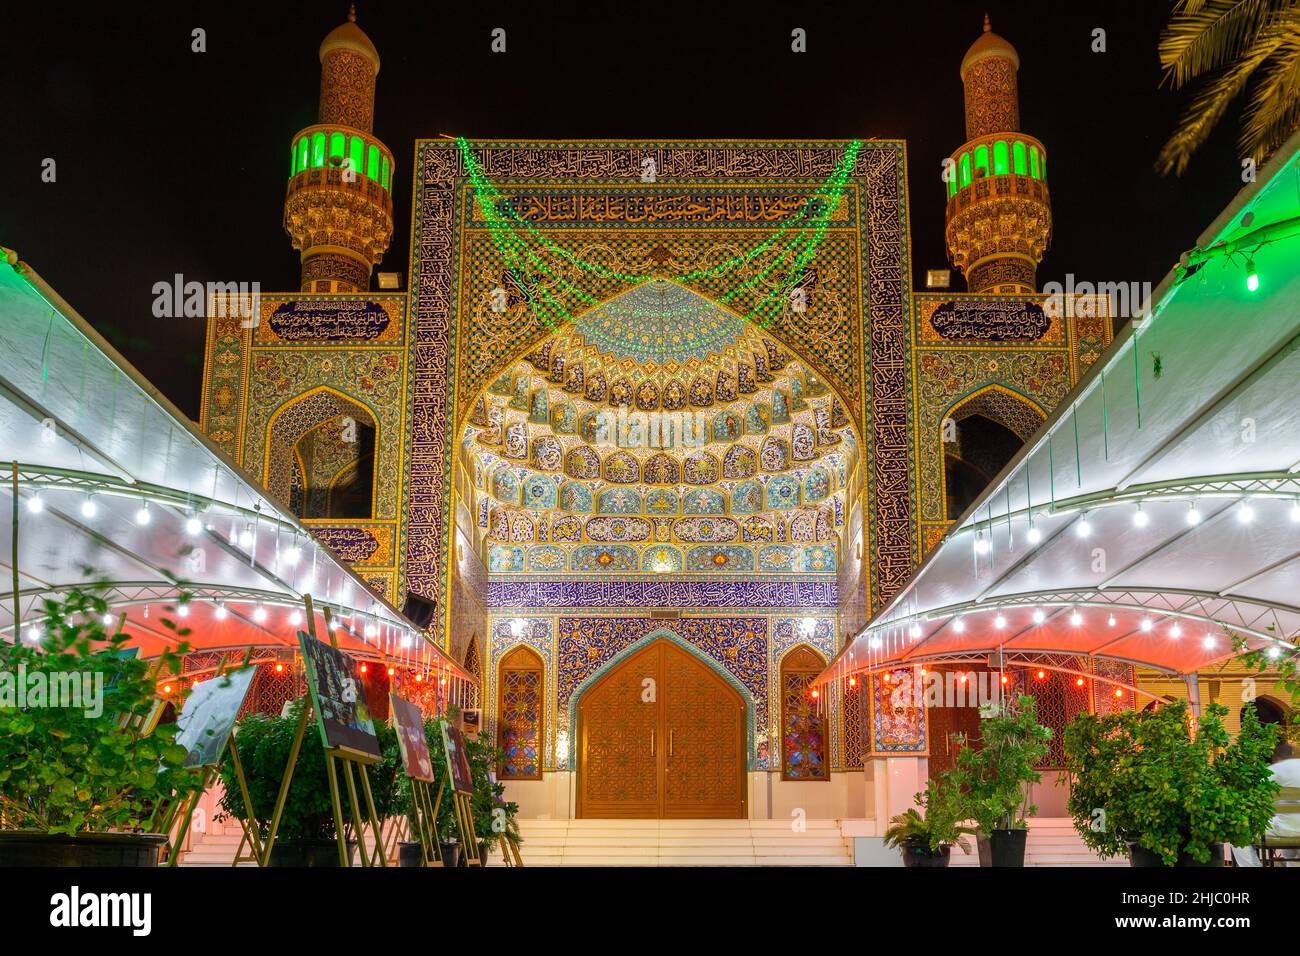 Dubaï, Émirats arabes Unis, 24.09.21.L'entrée de la mosquée iranienne (mosquée Imam Hussein) à Dubaï, avec ses carreaux colorés, sa façade de style persan et son drapeau national des Émirats Arabes Unis Banque D'Images